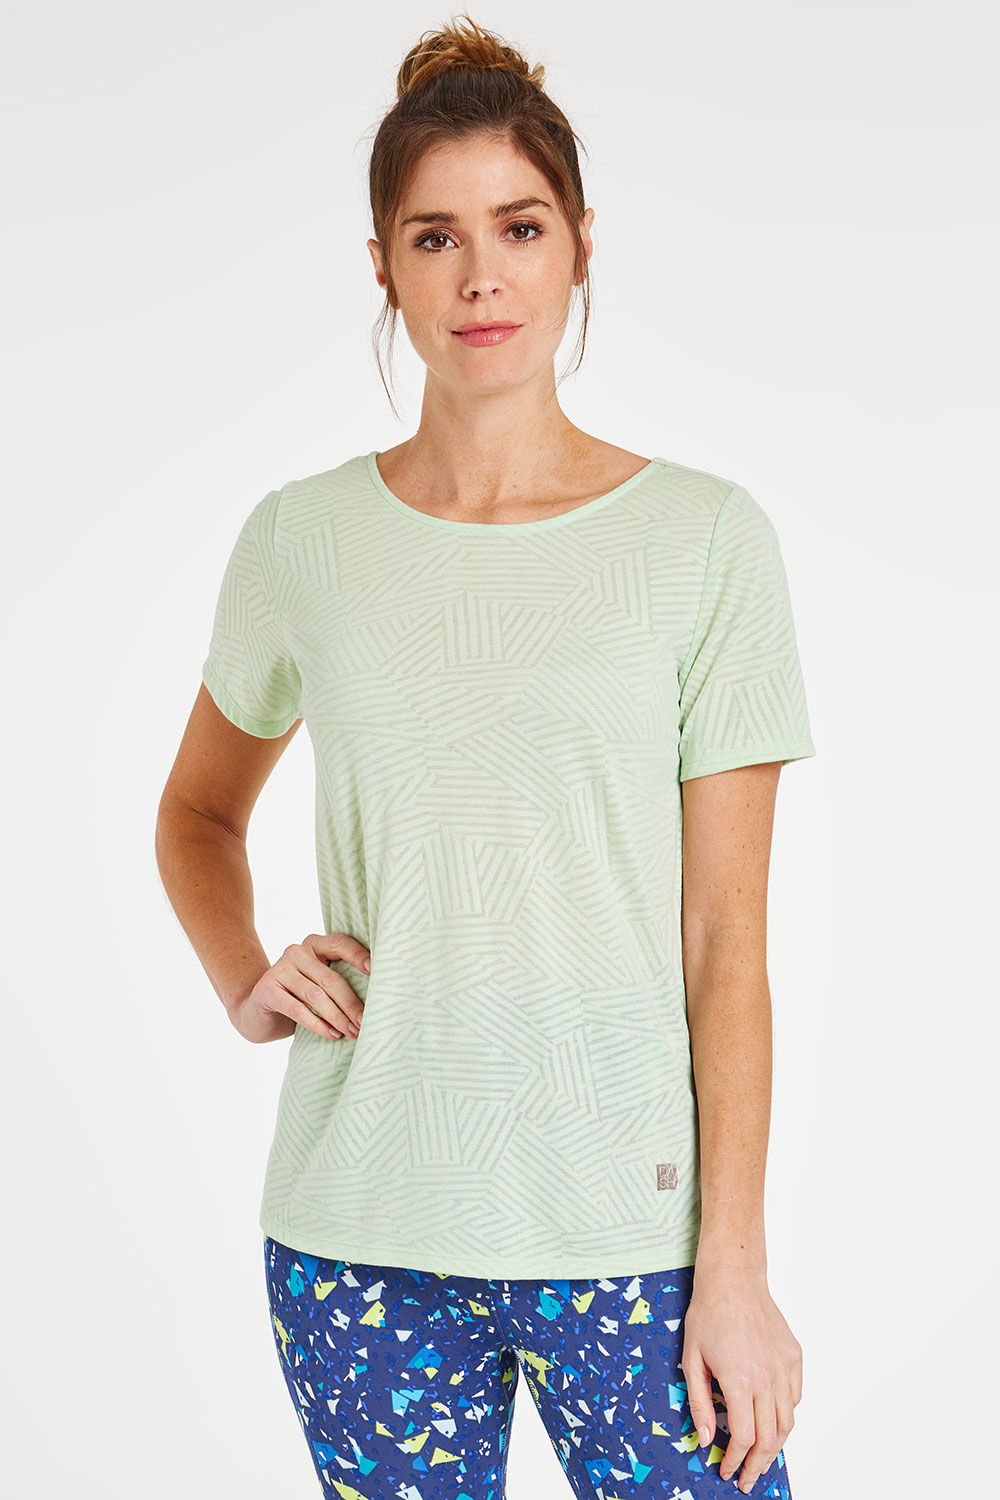 DASH Women’s Light Green Short Sleeve Burnout Print Criss Cross Back T-Shirt, Size: 24